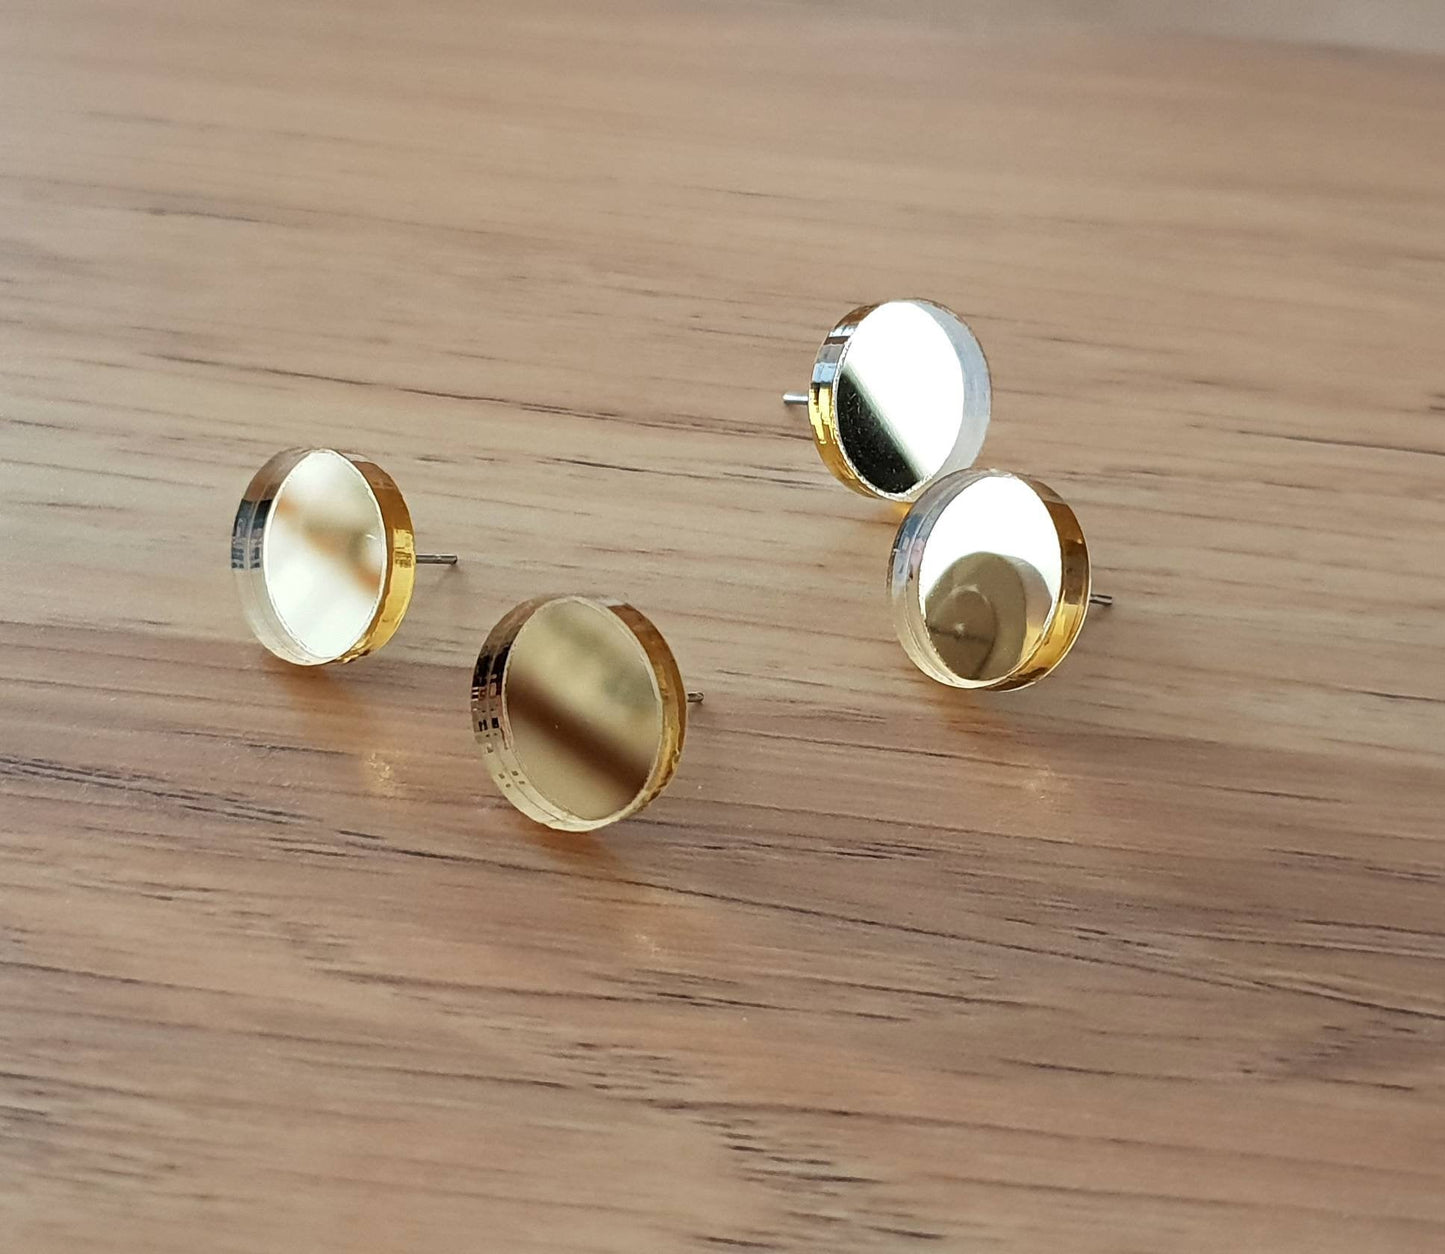 Gold Mirror Circle Stud Earrings, Acrylic Earrings, Stainless Steel Earrings.